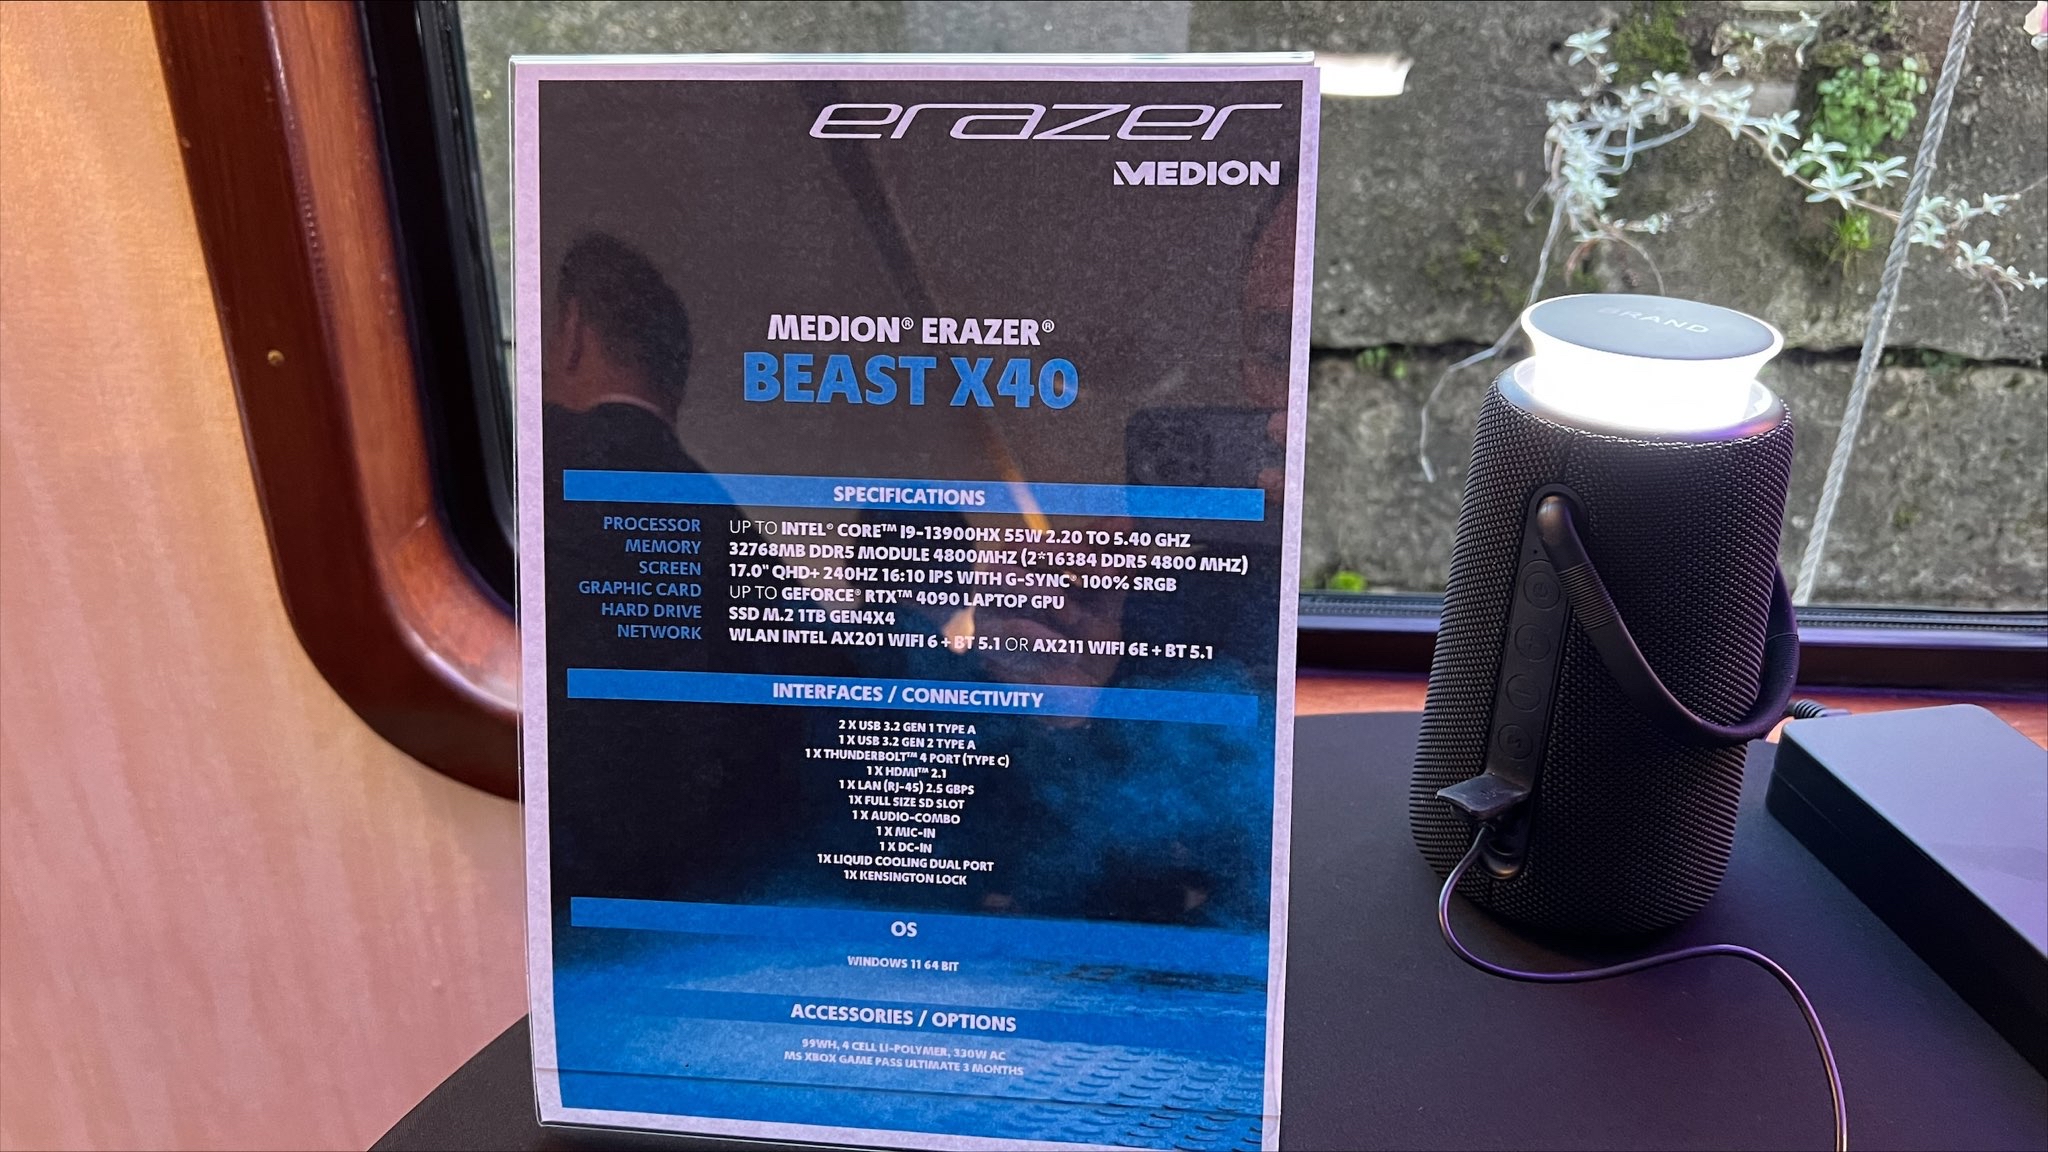 Labo : l'Erazer Beast X40, un PC portable refroidi à l'eau - Les